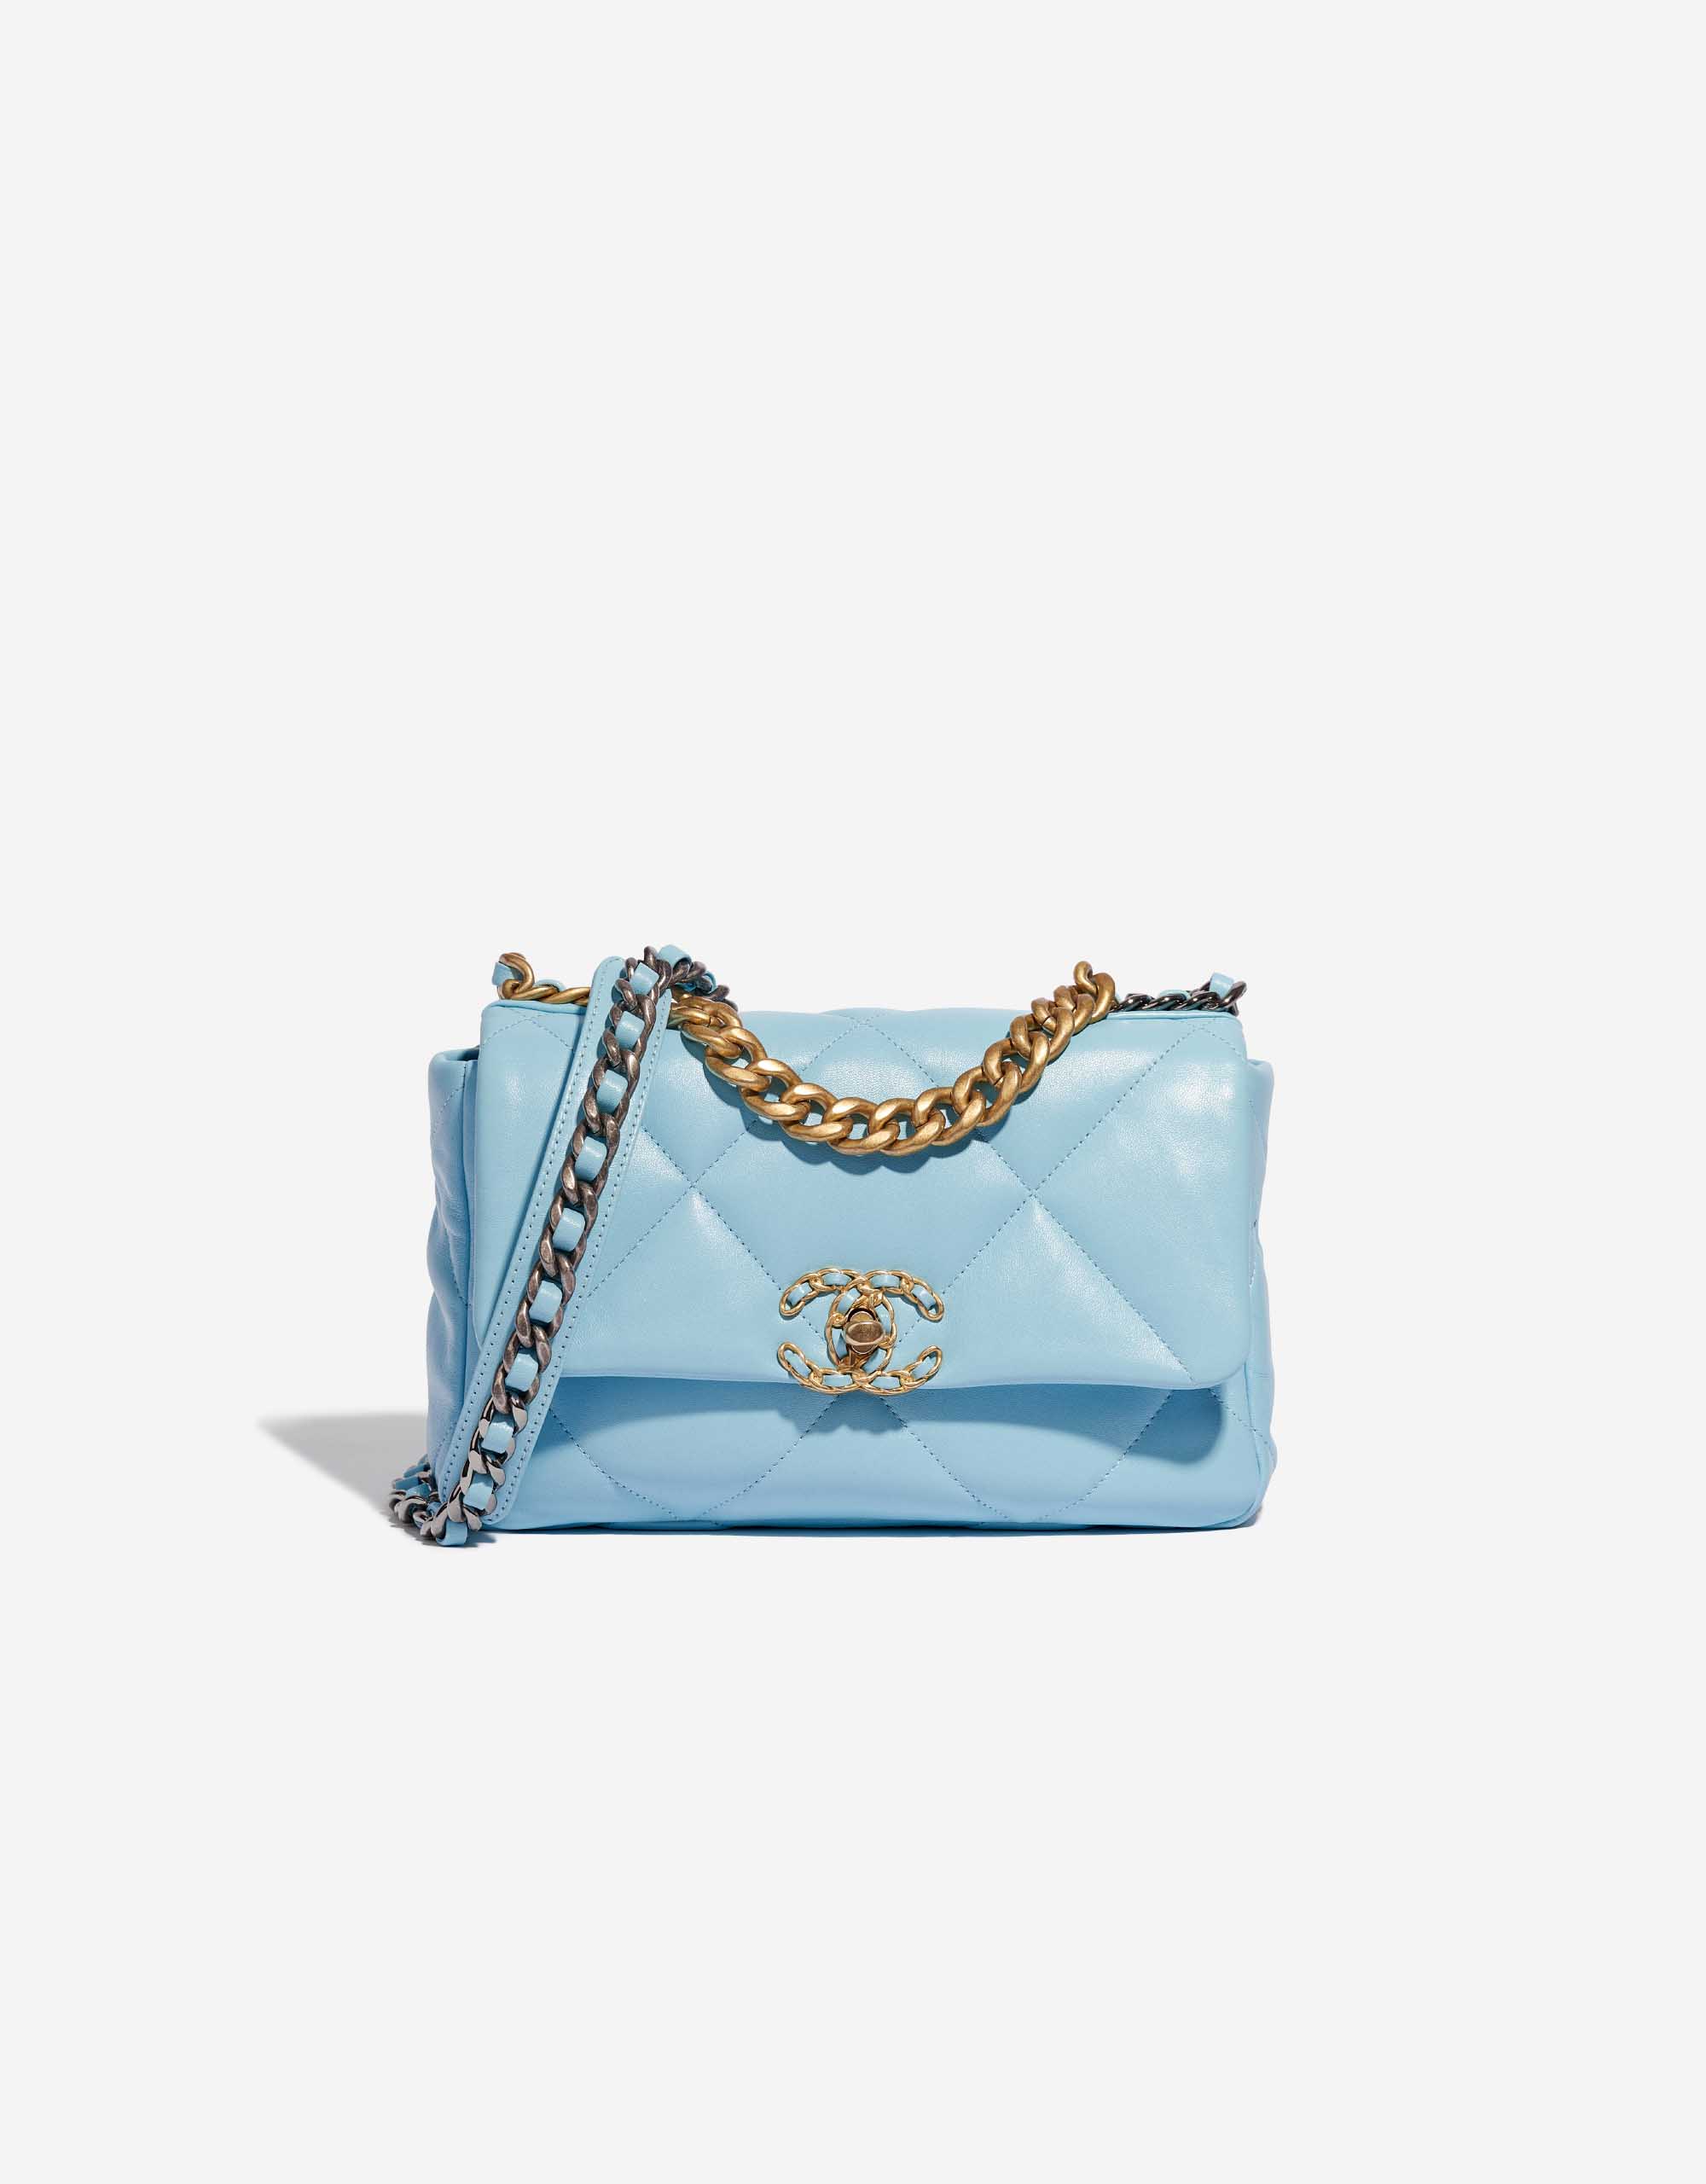 Chanel 19 Flap Bag Lamb Sky Blue | SACLÀB